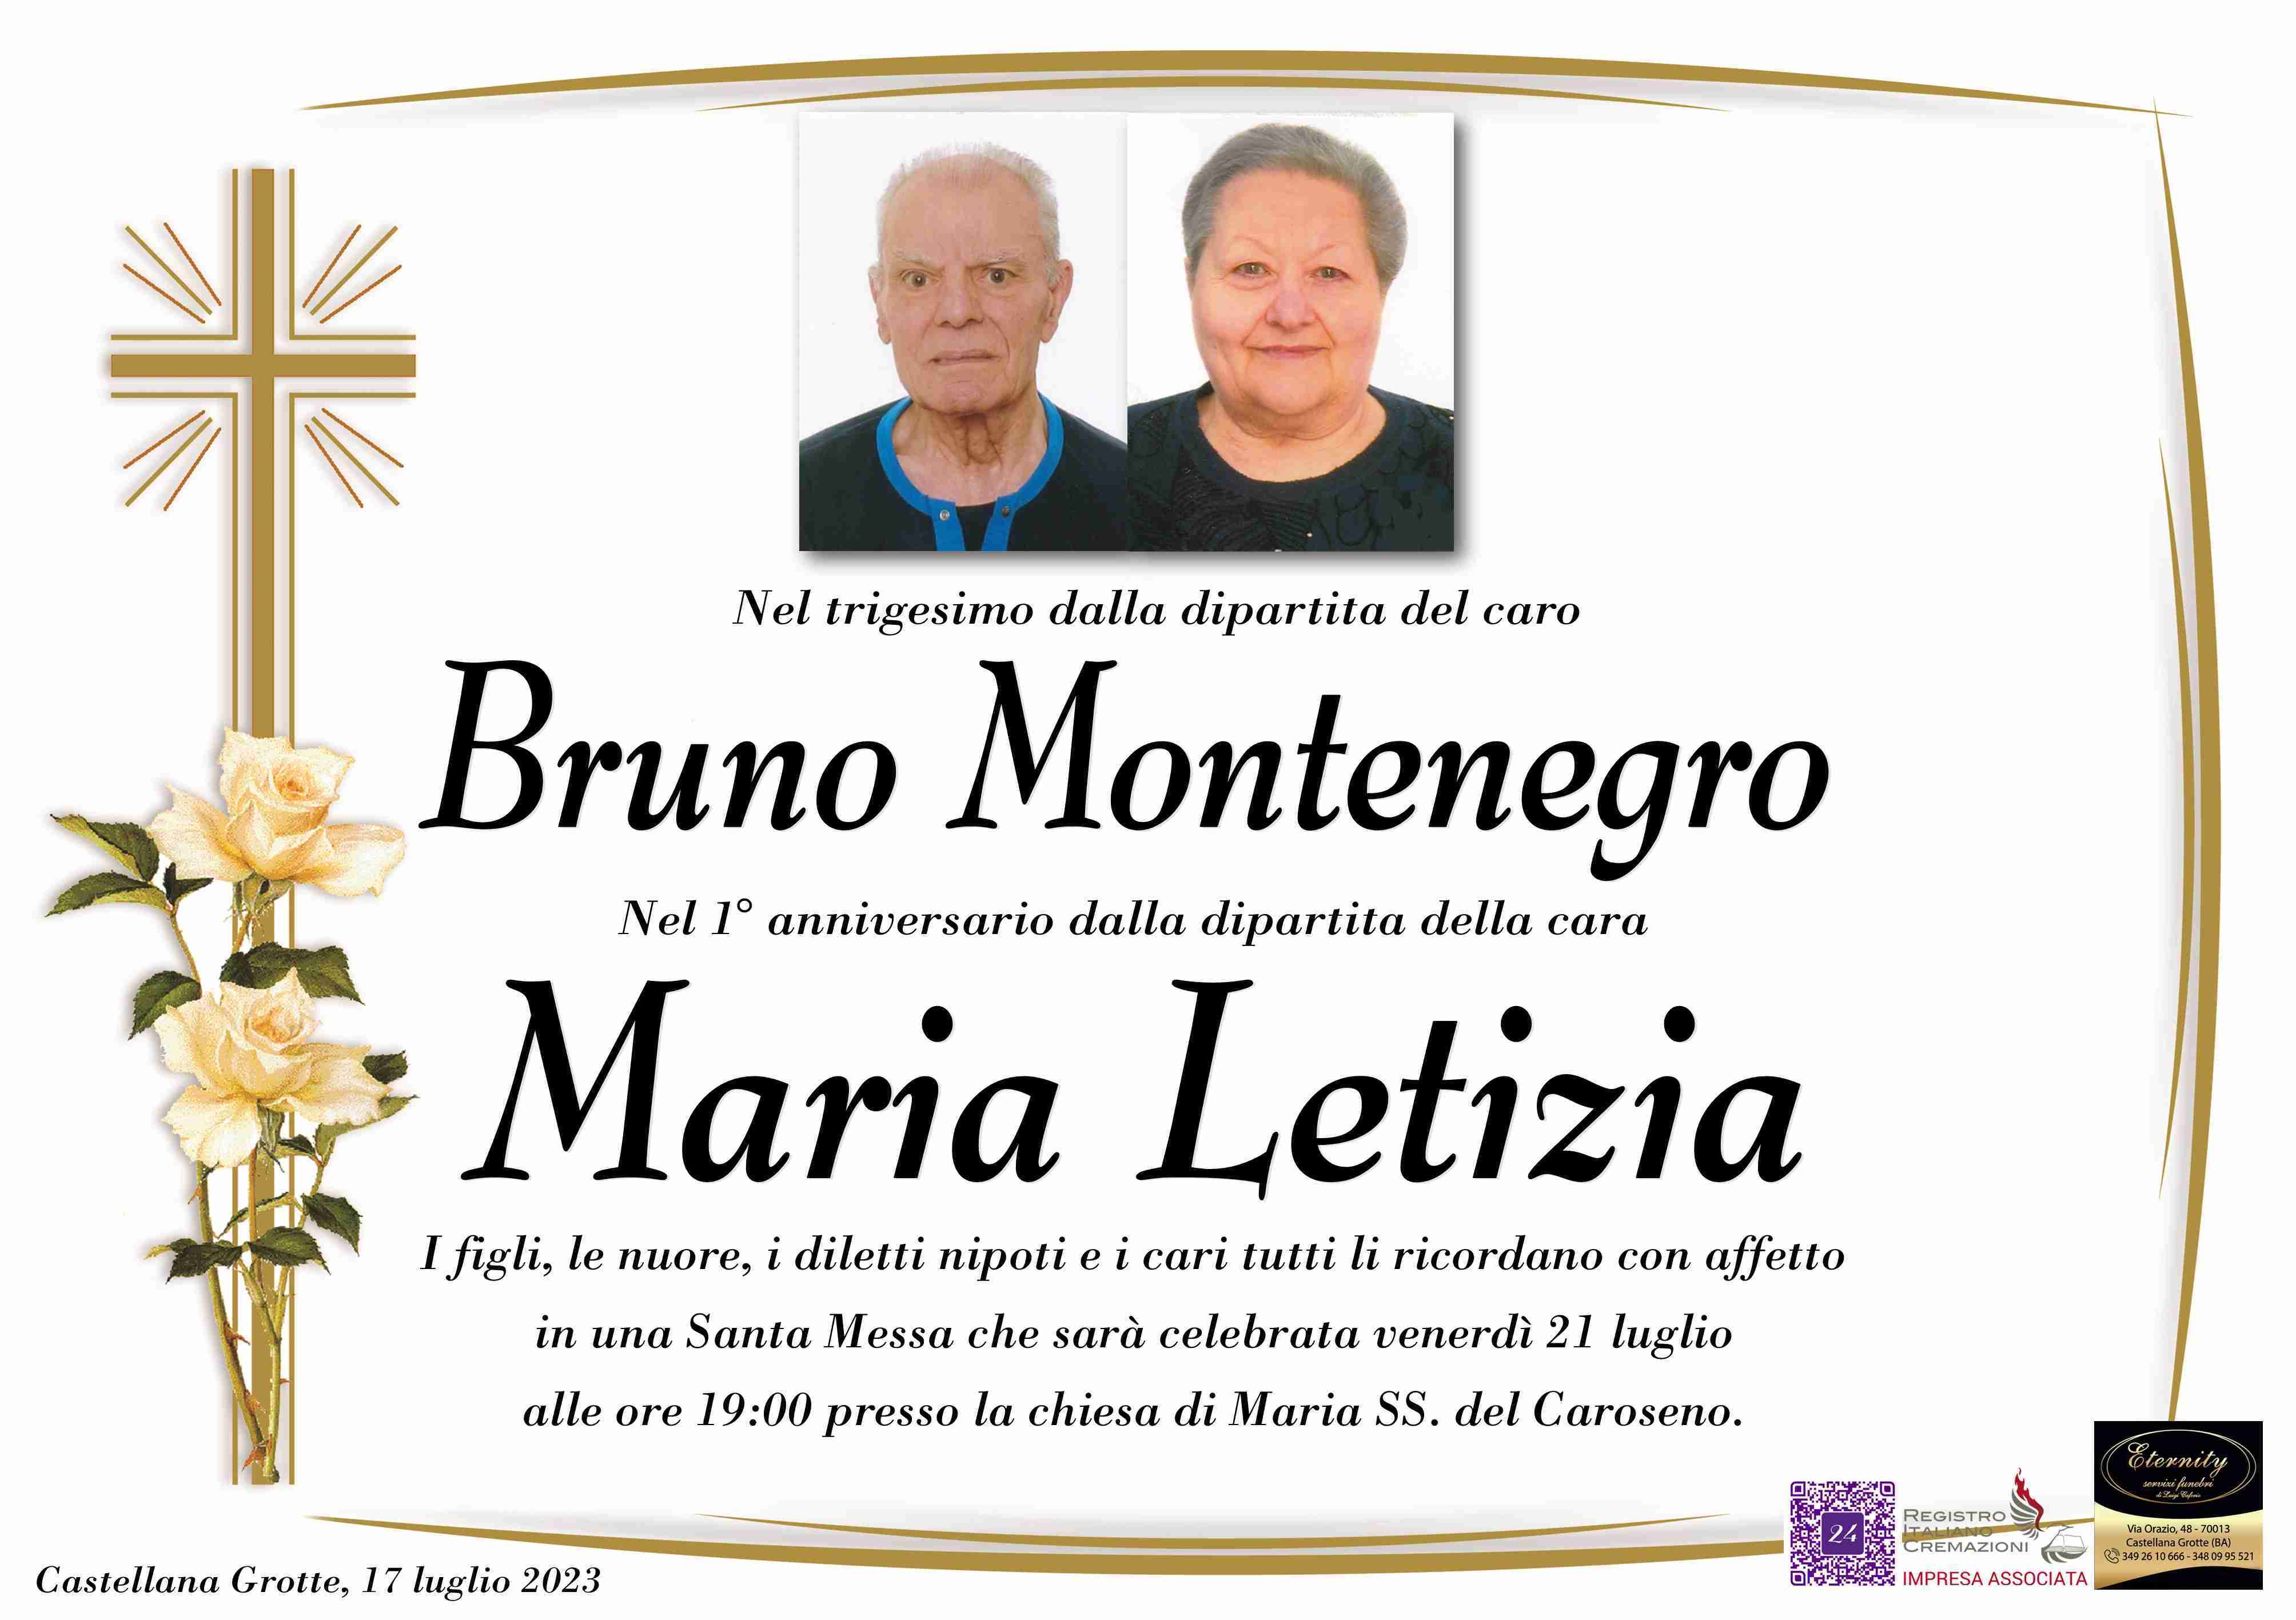 Bruno Montenegro e Maria Letizia